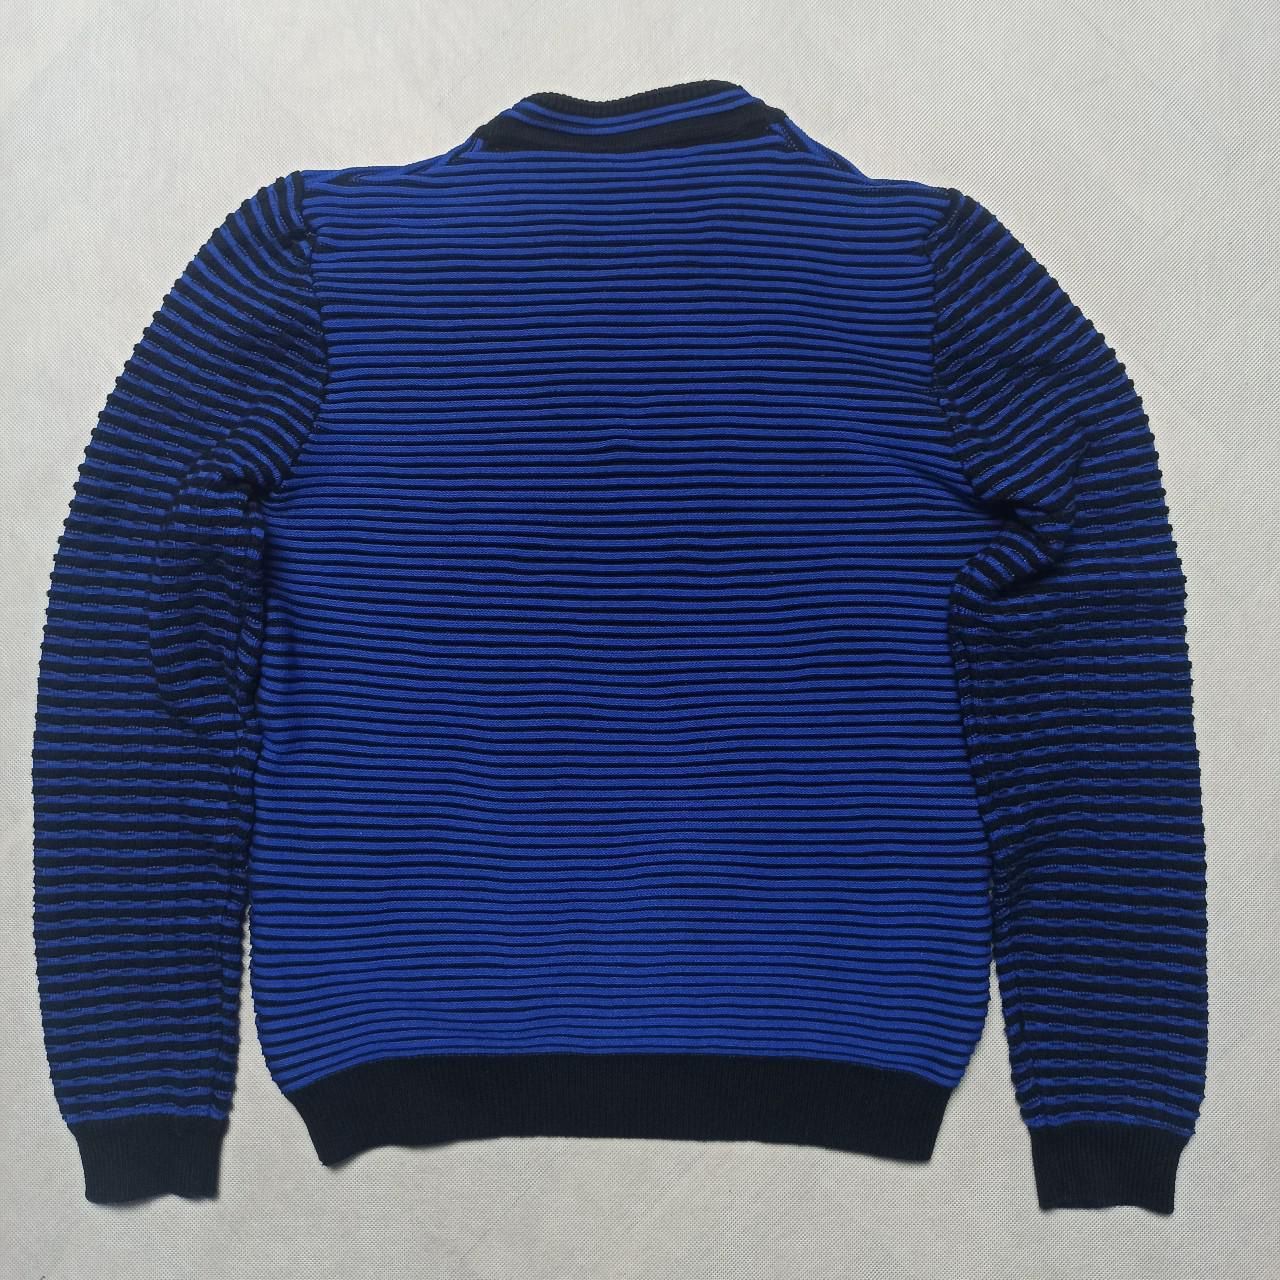 Hologram sweter
Kenzo striped knit 3d futuristic sweaterSzerokość 53